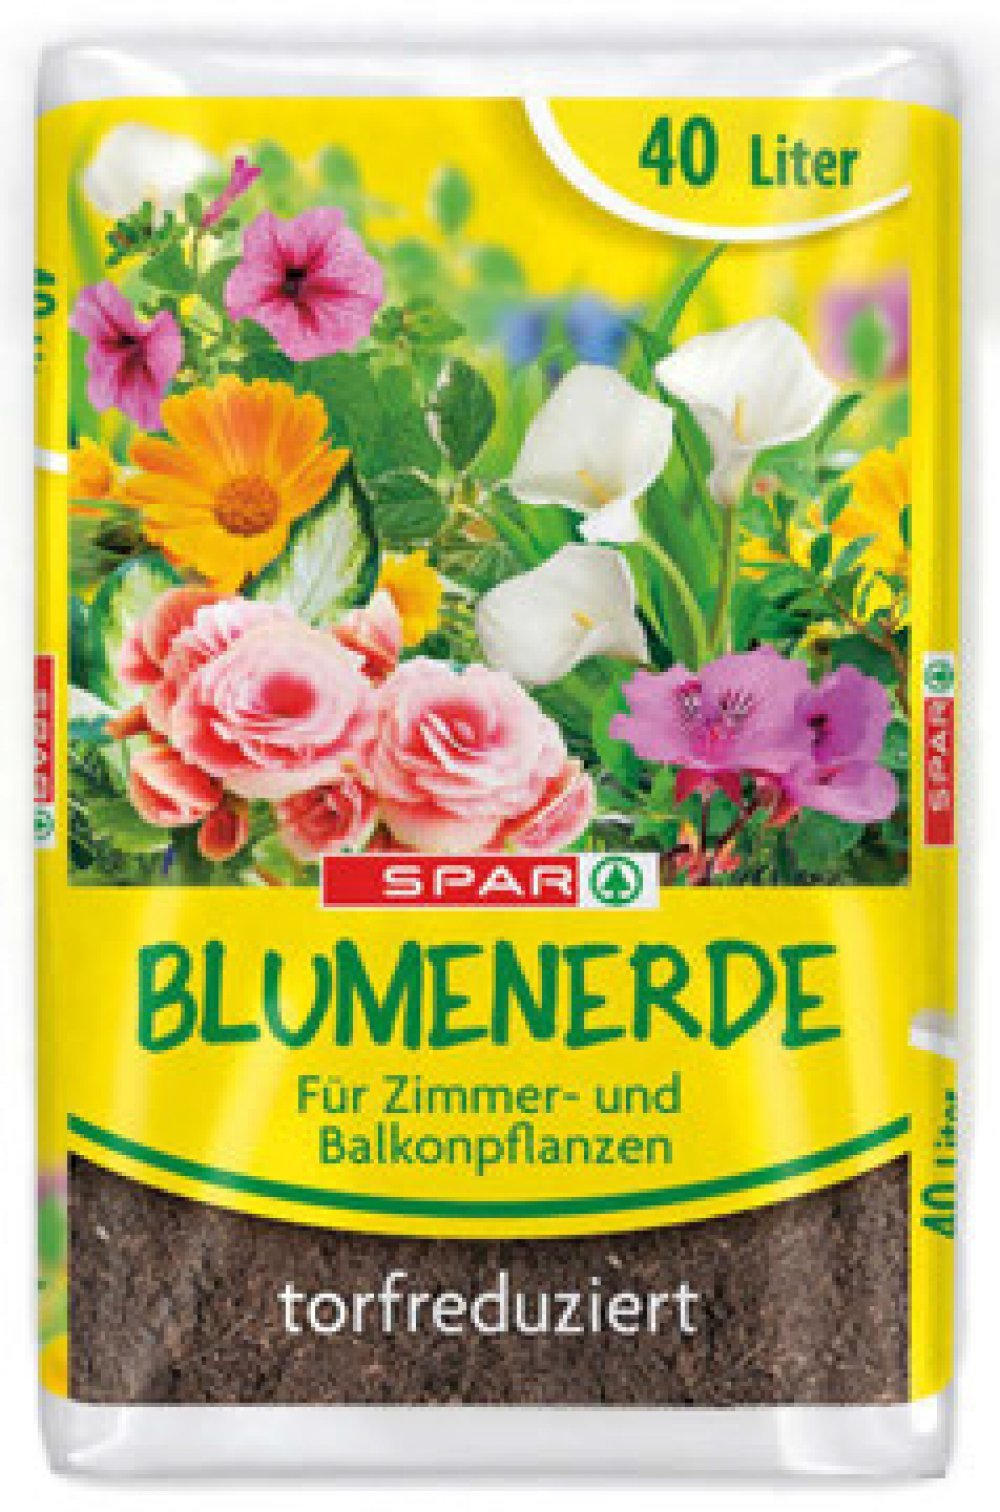 wogibtswas.at - SPAR Blumenerde € 1,99 statt € 2,99 bei SPAR Esther Glaser